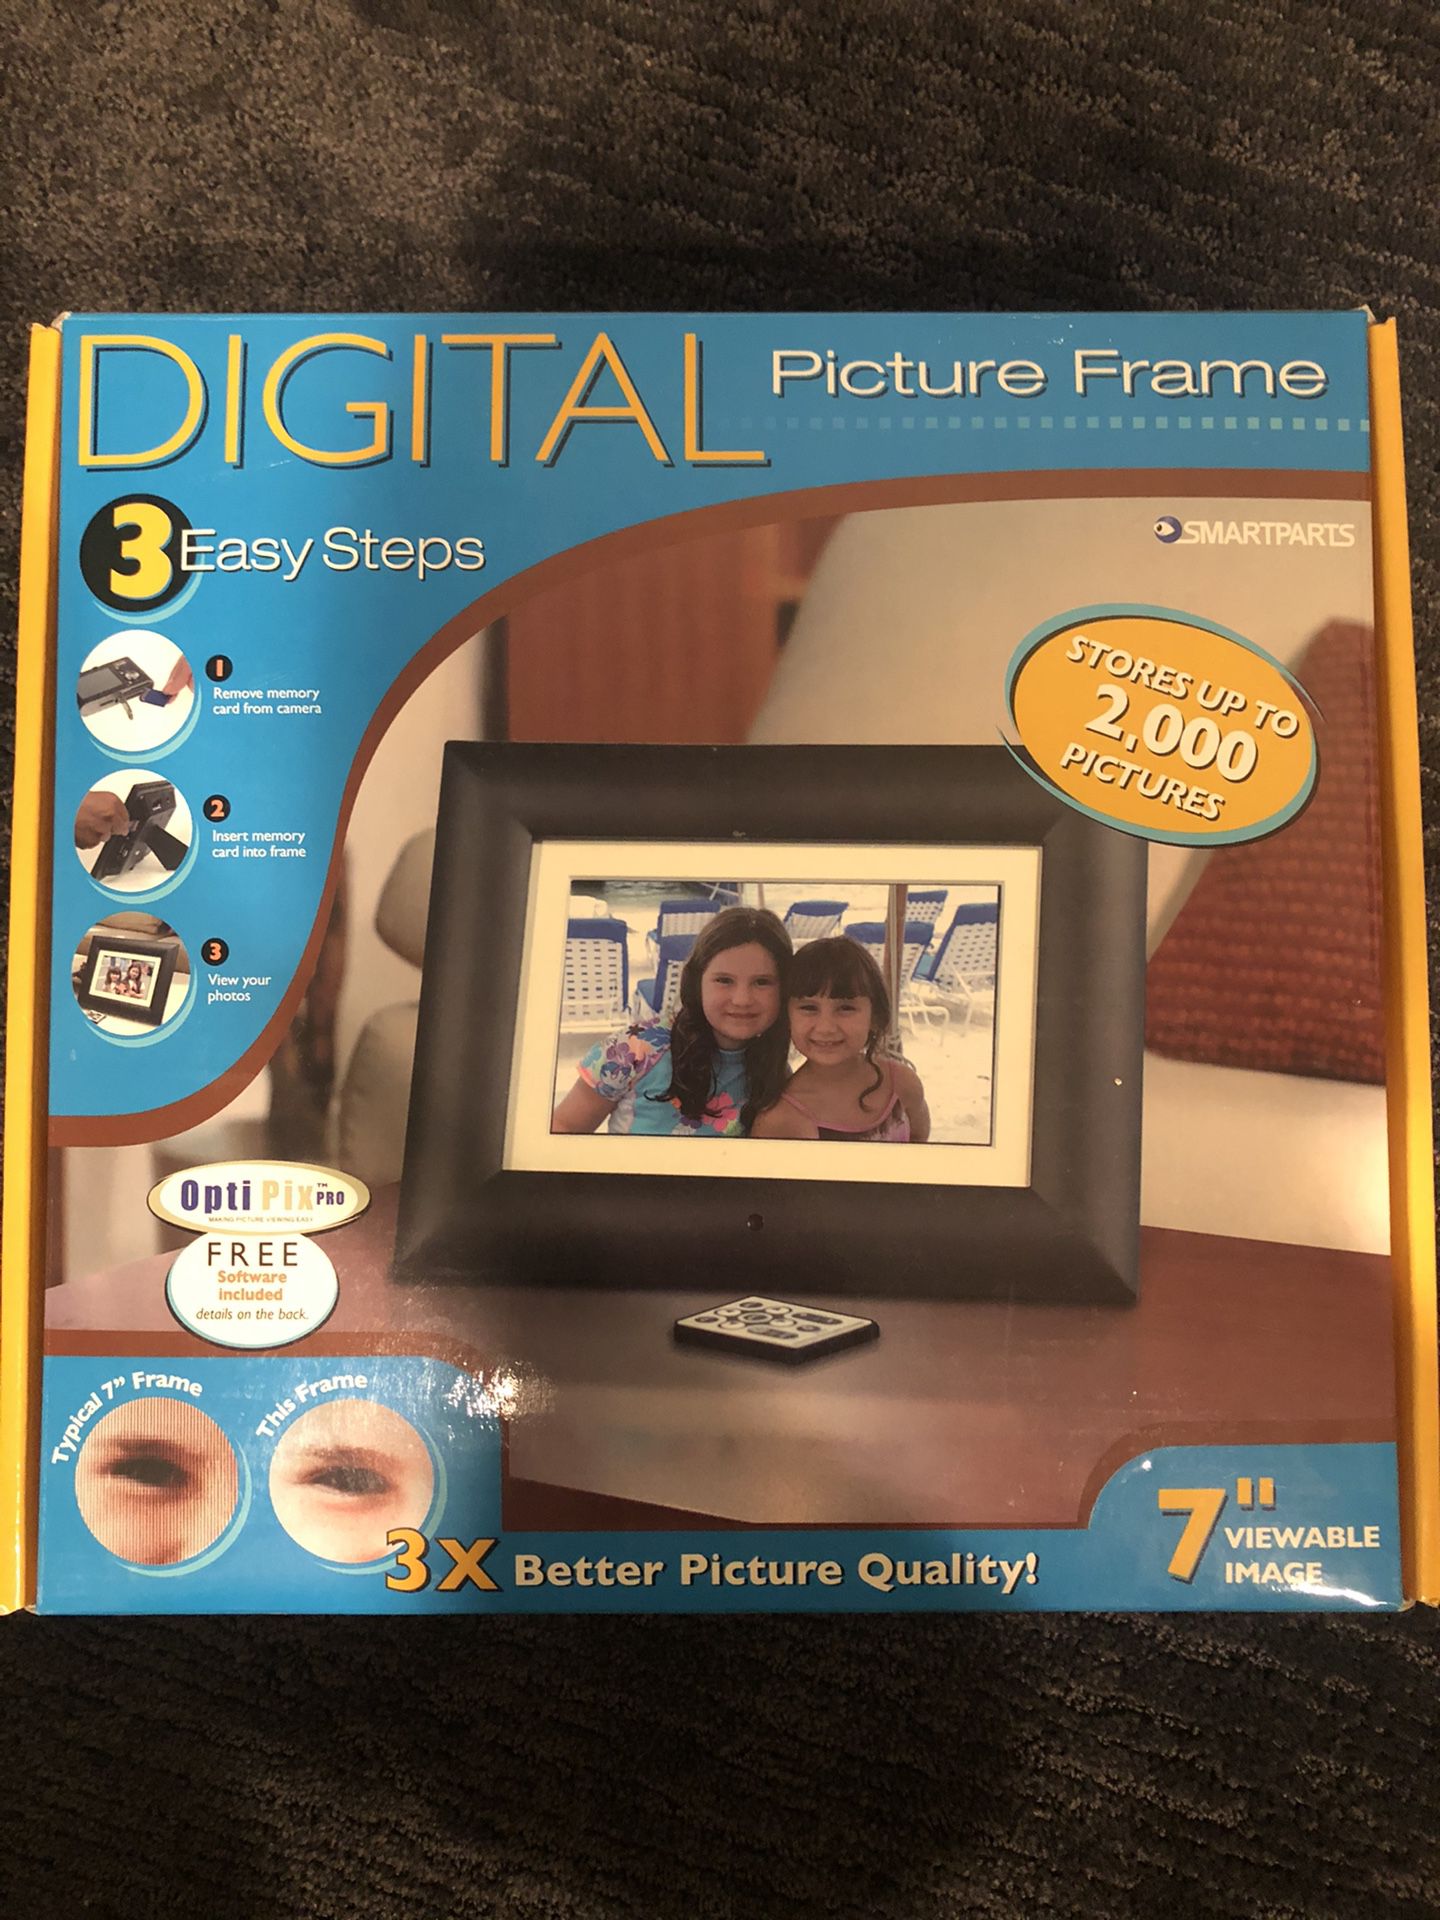 Digital Picture Frame - Smartparts